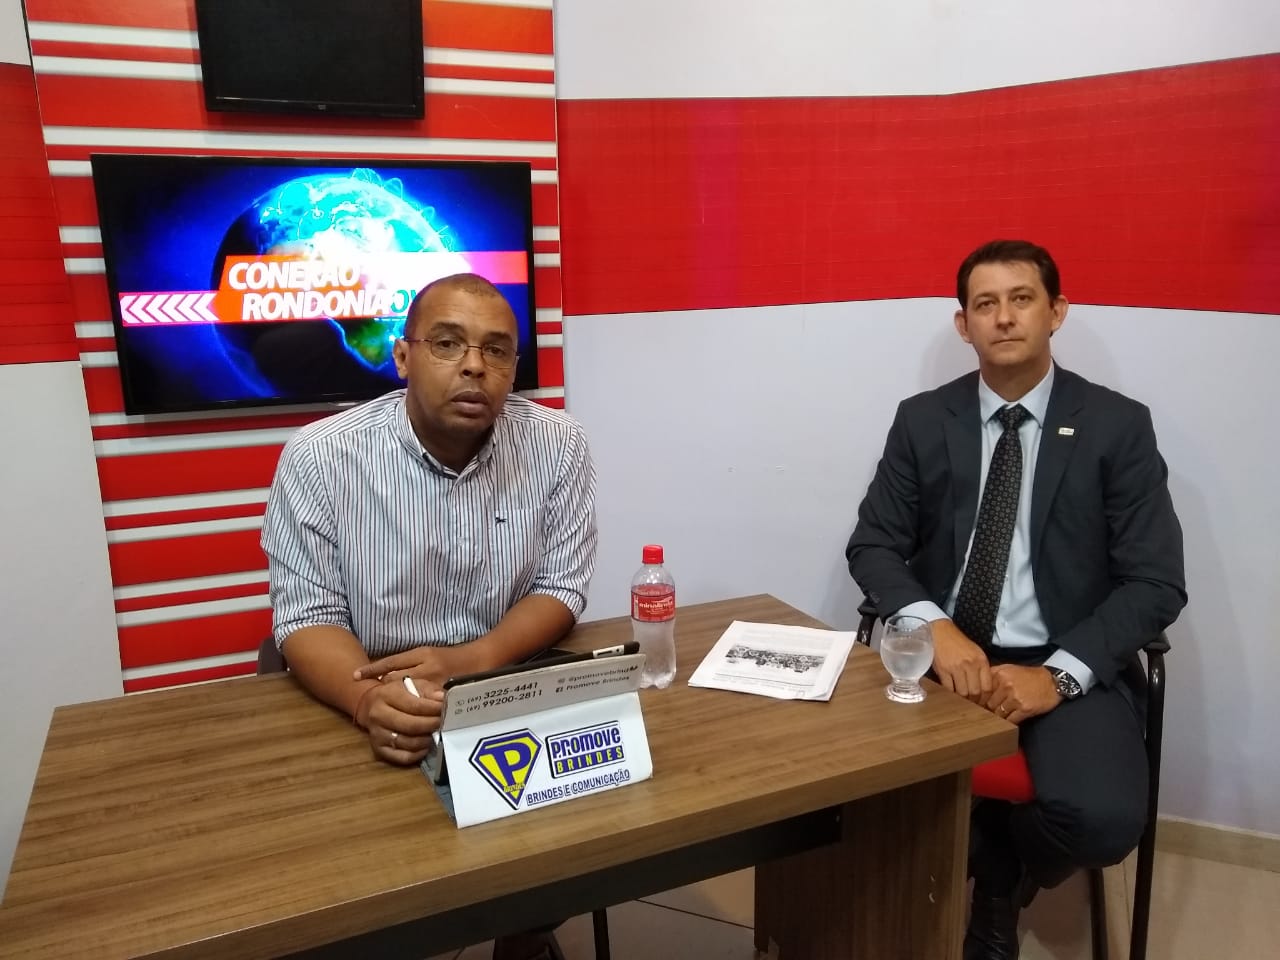 CONEXÃO RONDONIAOVIVO: Entrevista com Mauricio Kurillo, Superintendente da Controladoria Regional da União em Rondônia